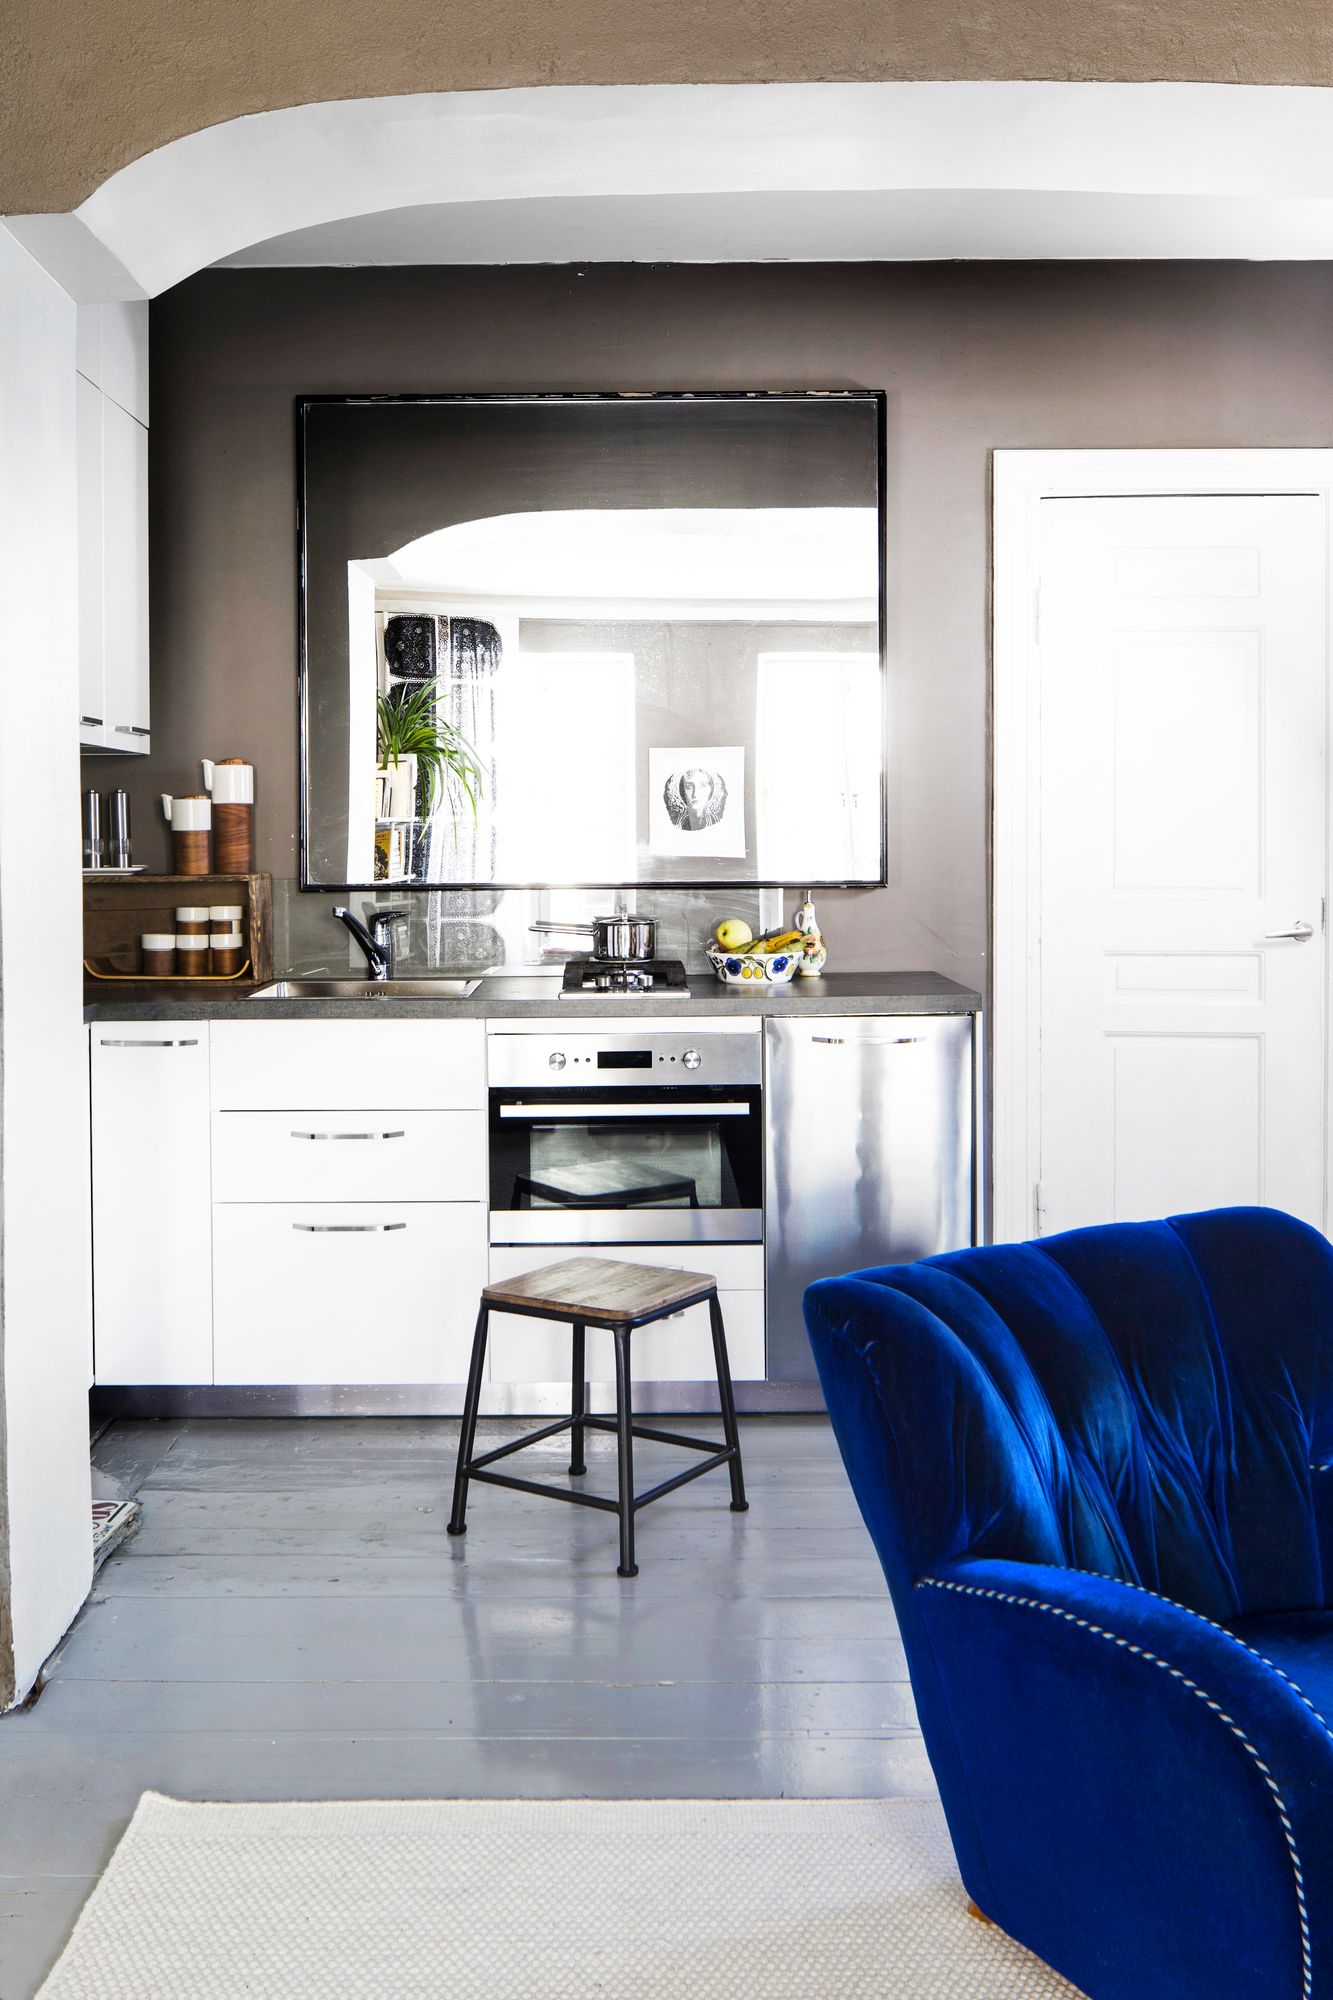 Huoneen perällä sijaitsevaan keittiöön tulvii luonnonvaloa peilin ansiosta.